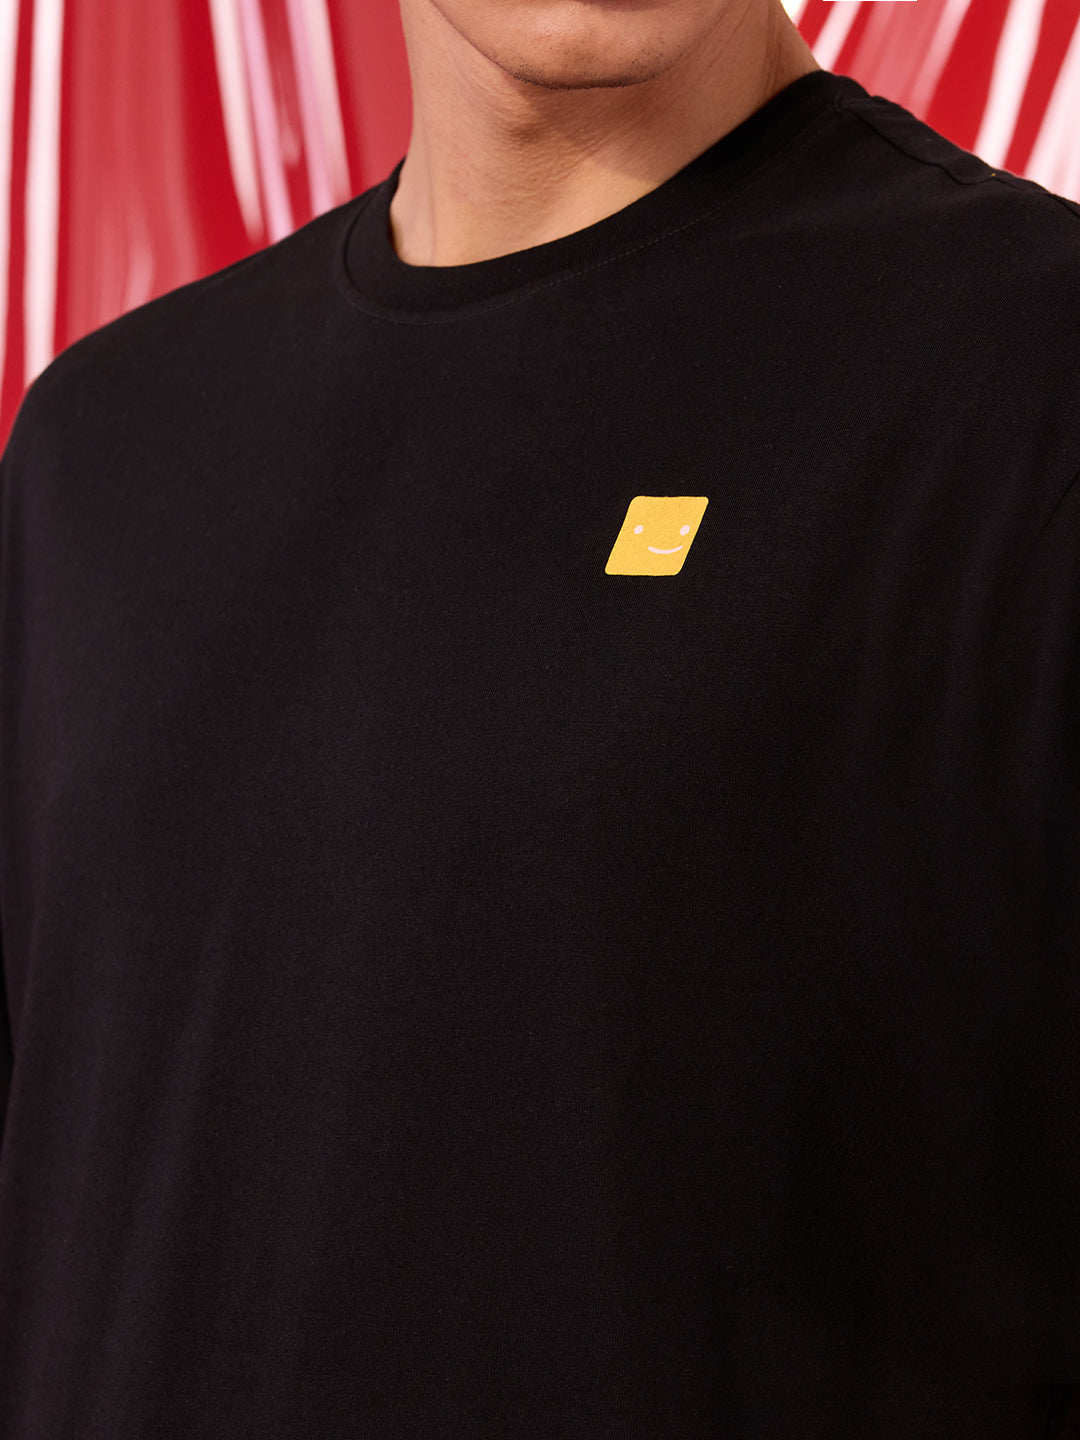 100% Match Netflix Black T-Shirt